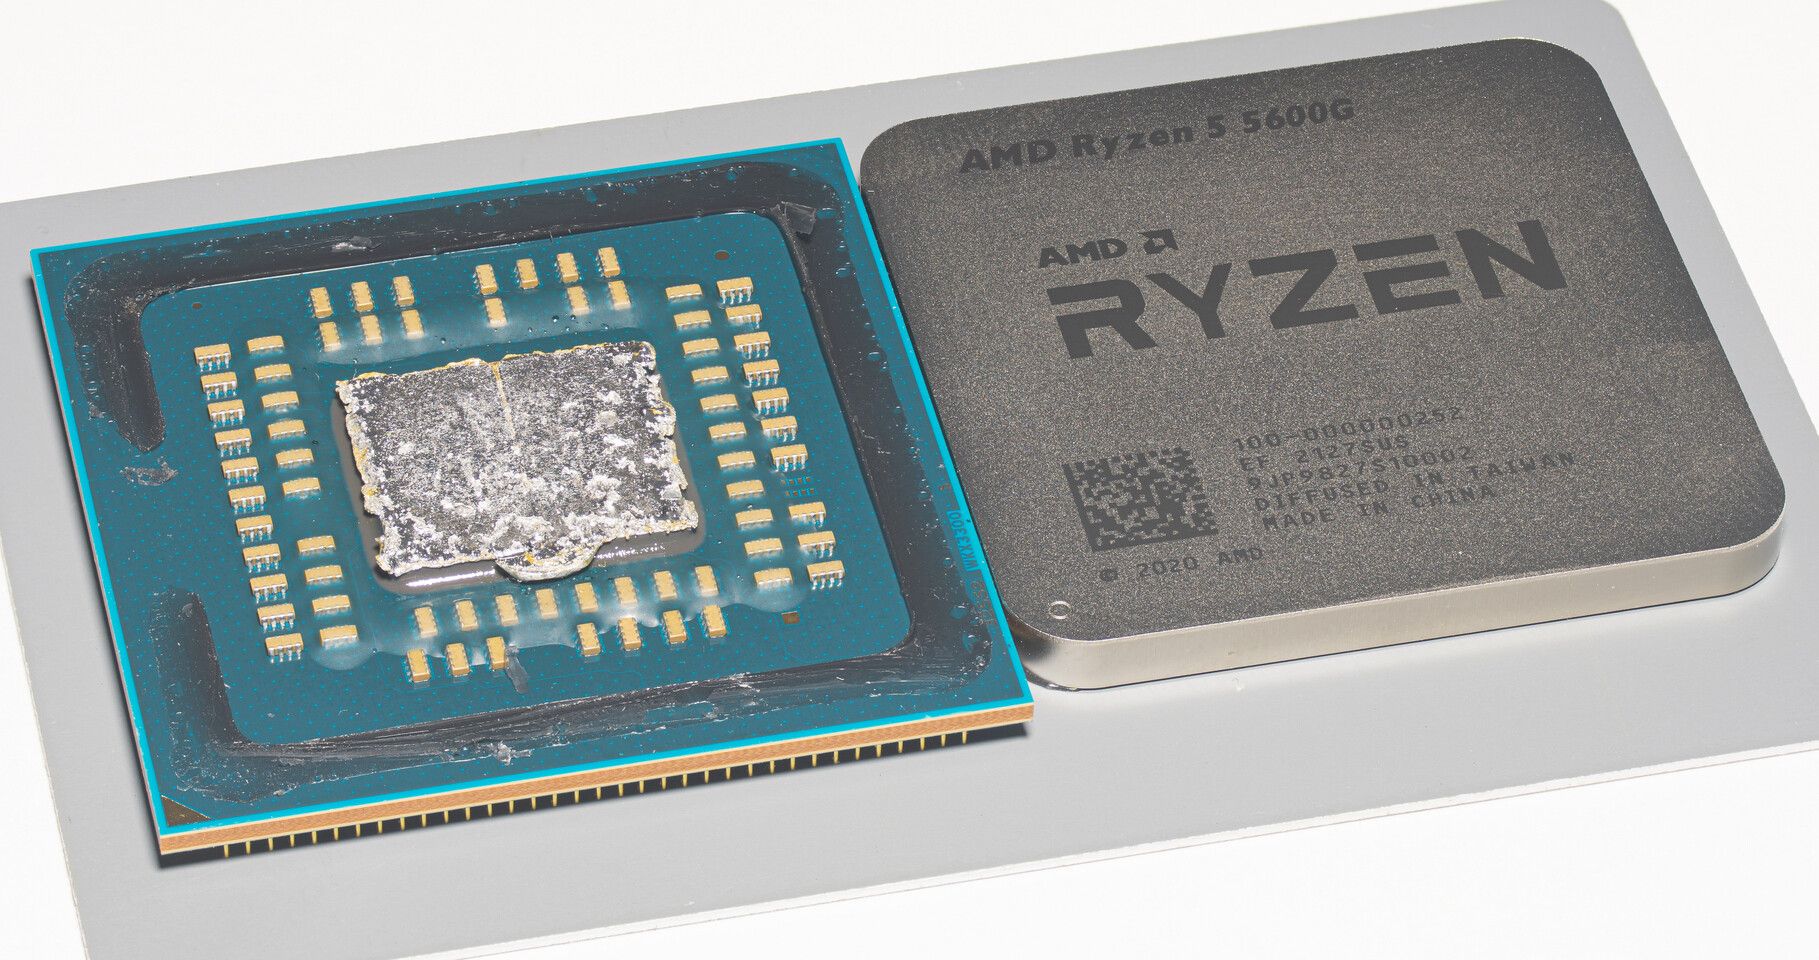 Lộ ảnh chụp die của APU Ryzen 5 5600G, tiết lộ vị trí 6 nhân CPU và 7 nhân GPU